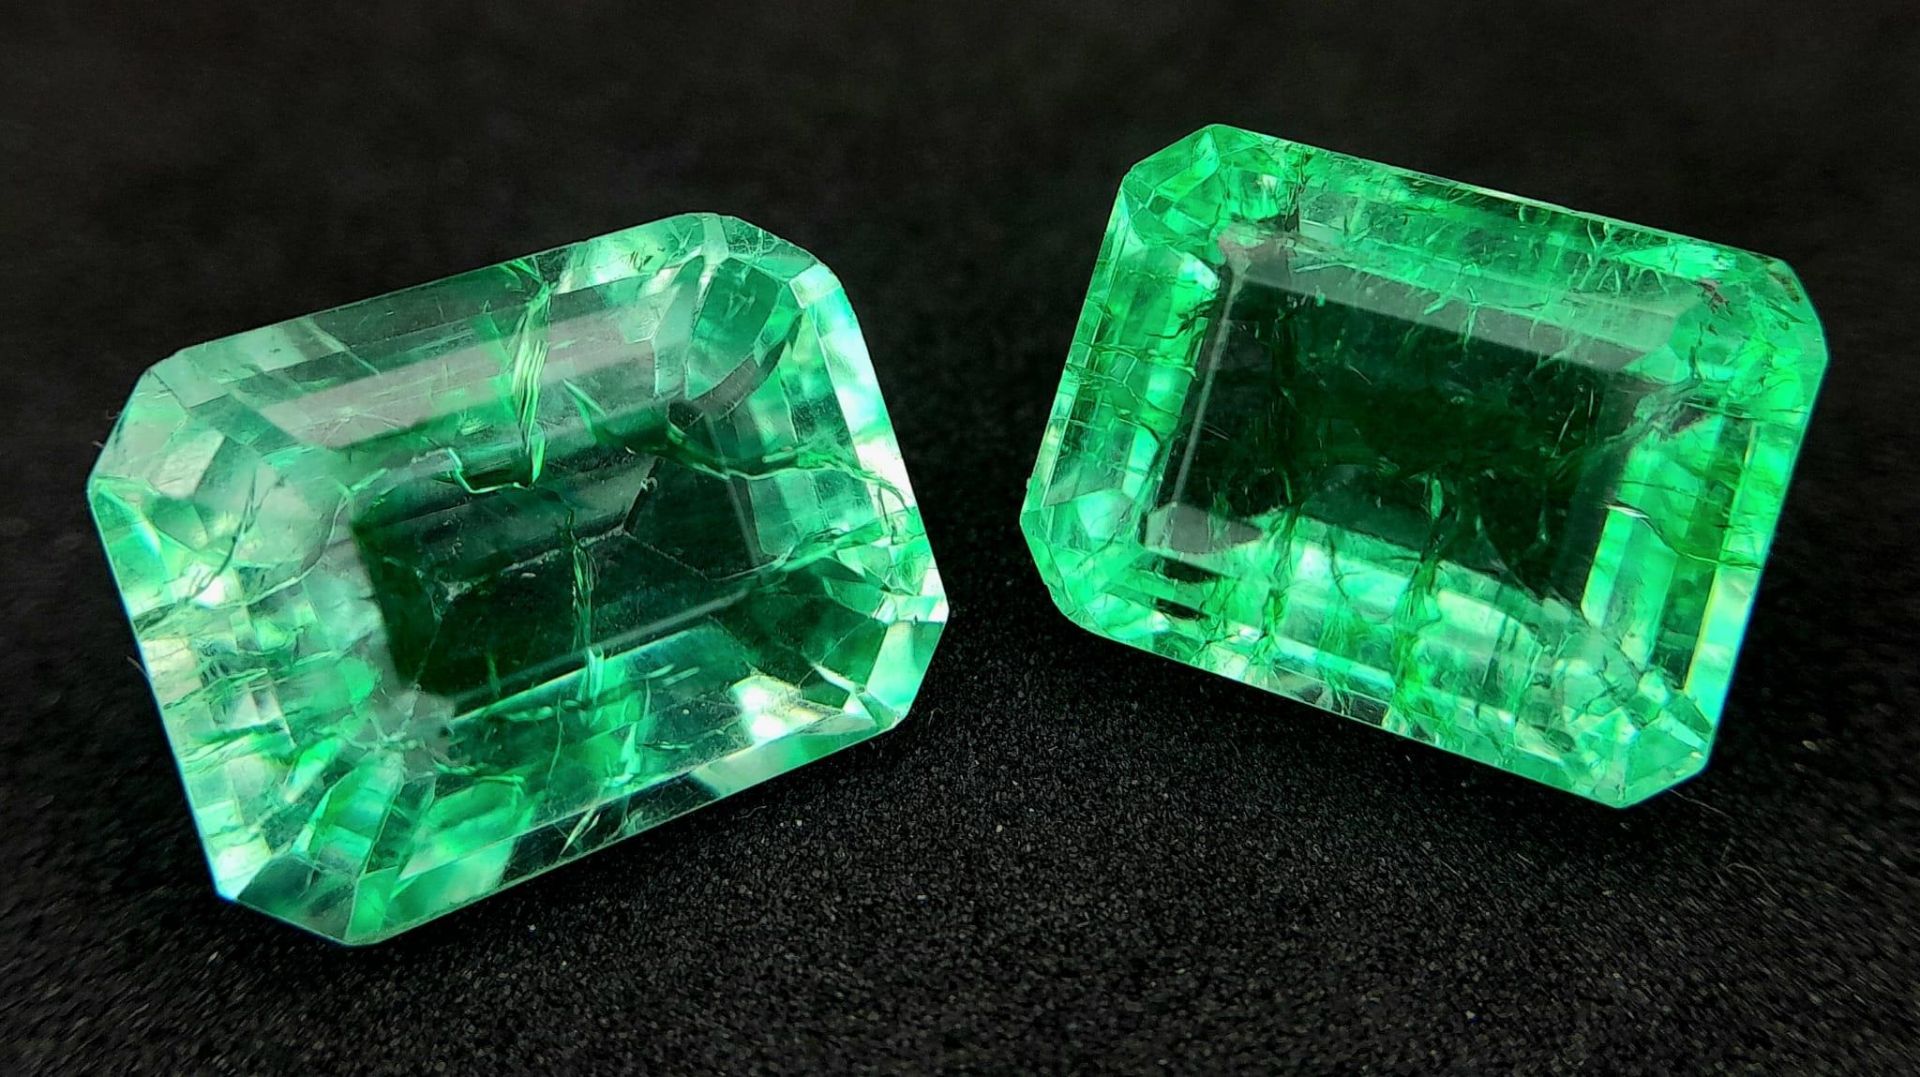 A very interesting pair of green quartz, emerald cut. Dimensions: 14 x 10 x 8mm, weight: 8 carats